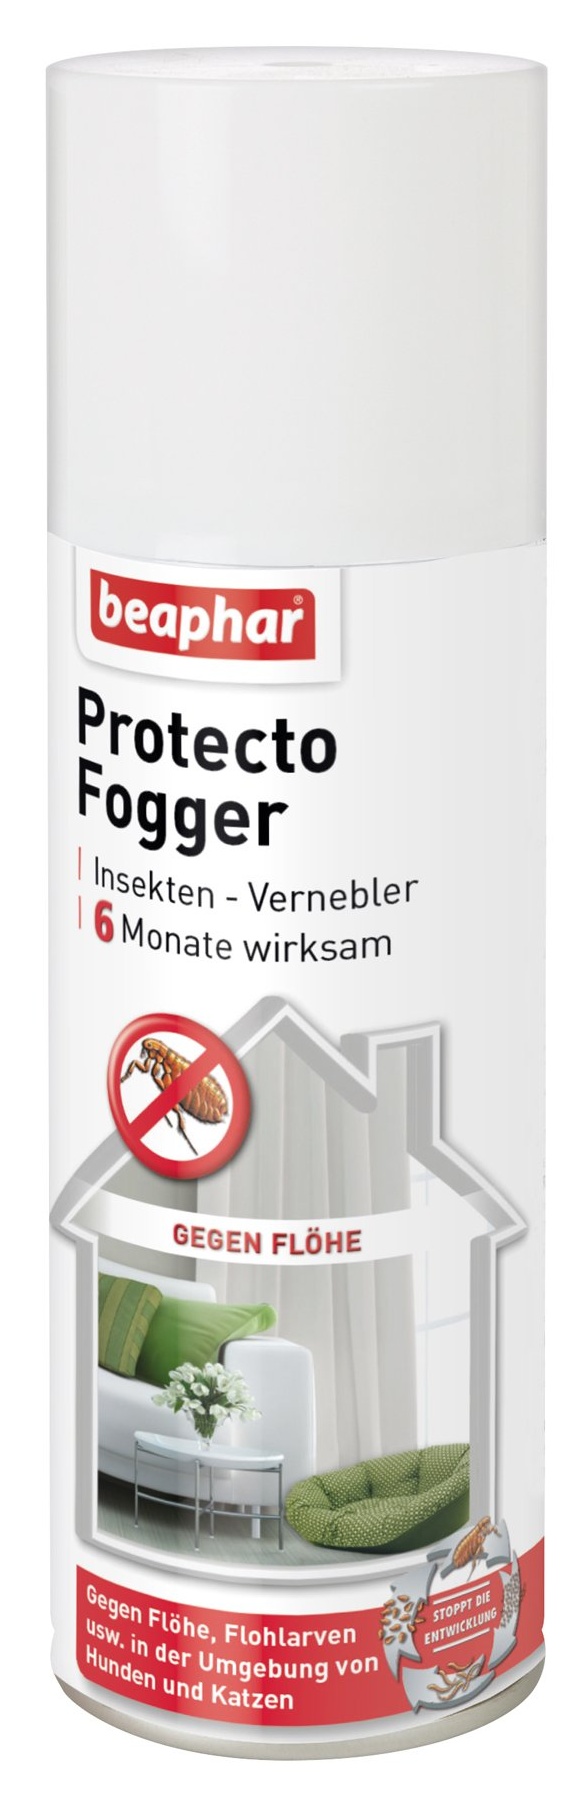 beaphar protecto fogger